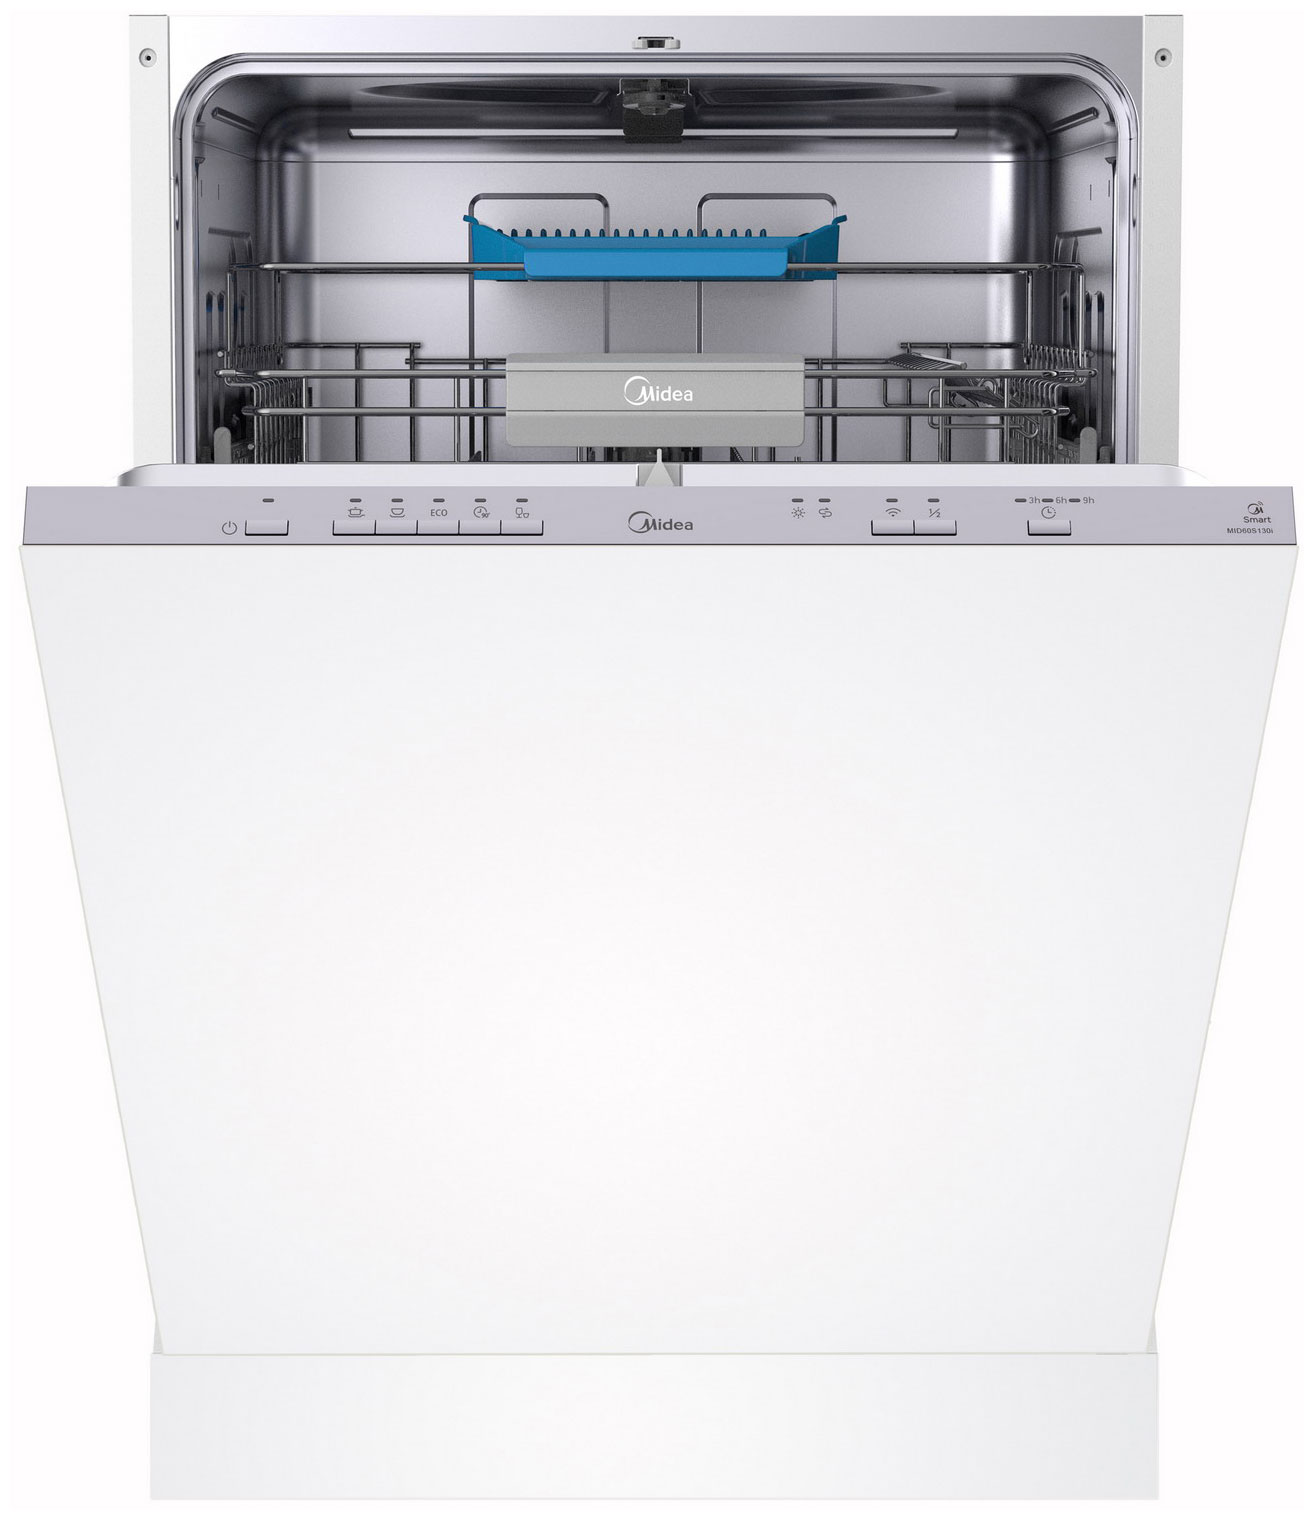 Встраиваемая посудомоечная машина Midea MID60S130i встраиваемая посудомоечная машина midea mid60s450i